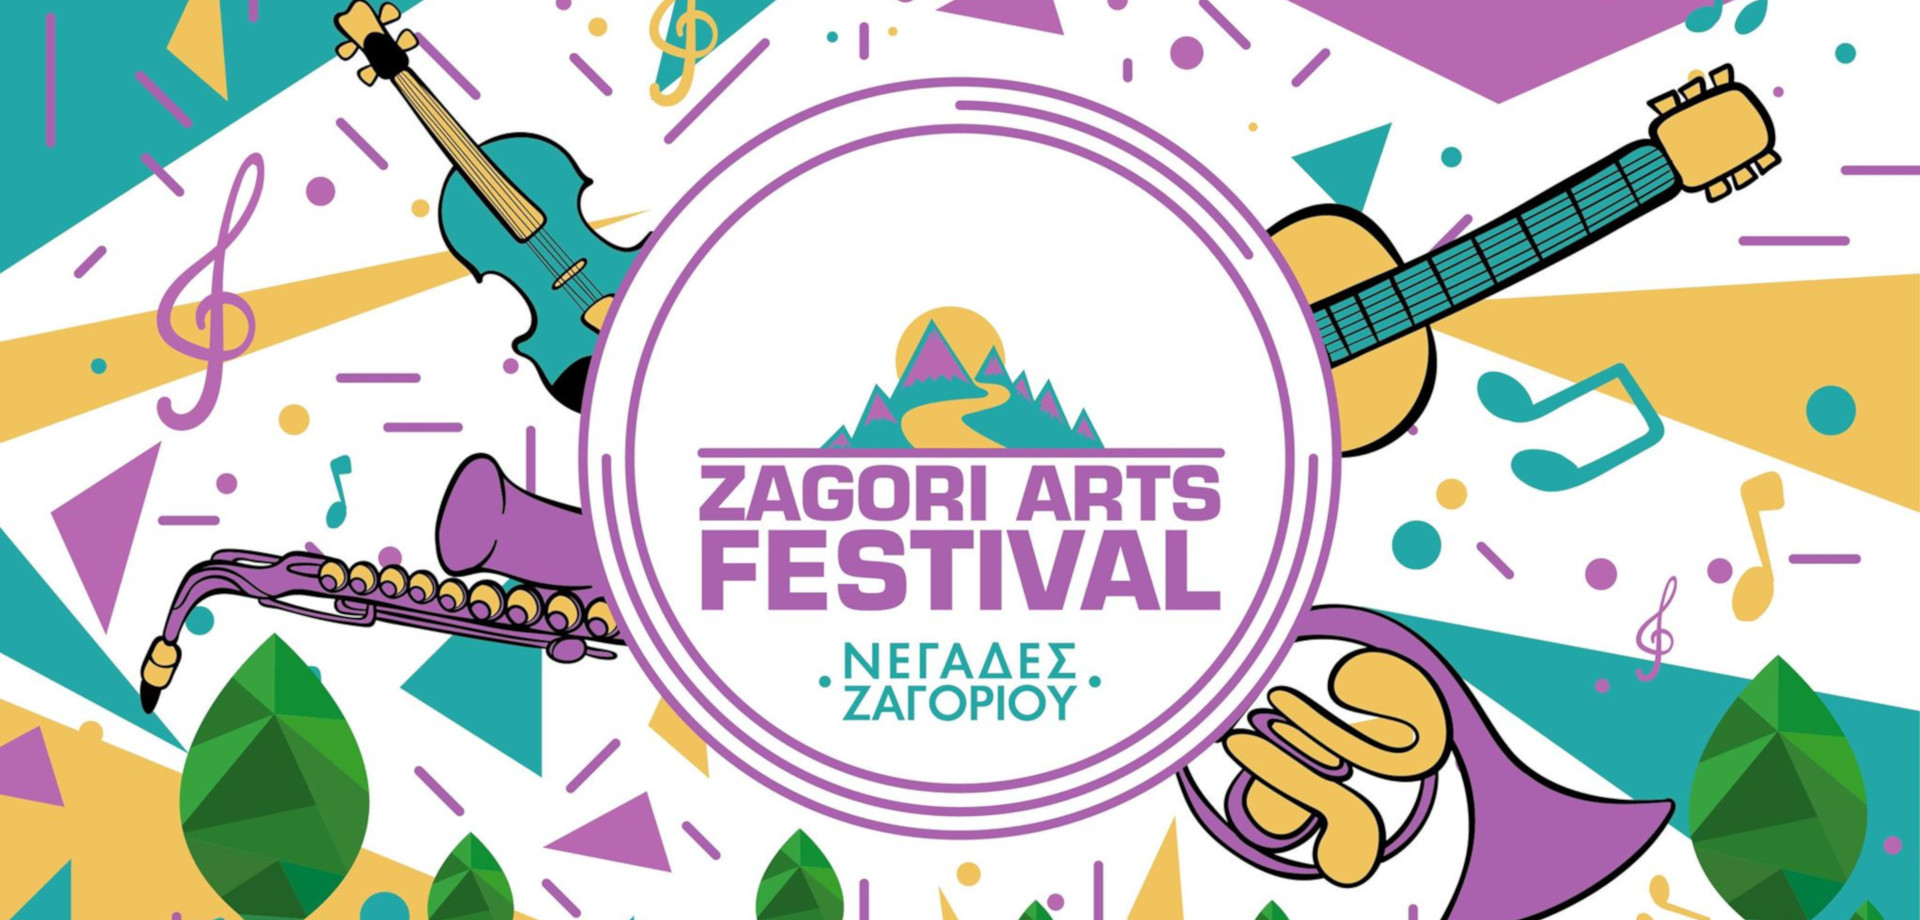 Zagori Arts Festival